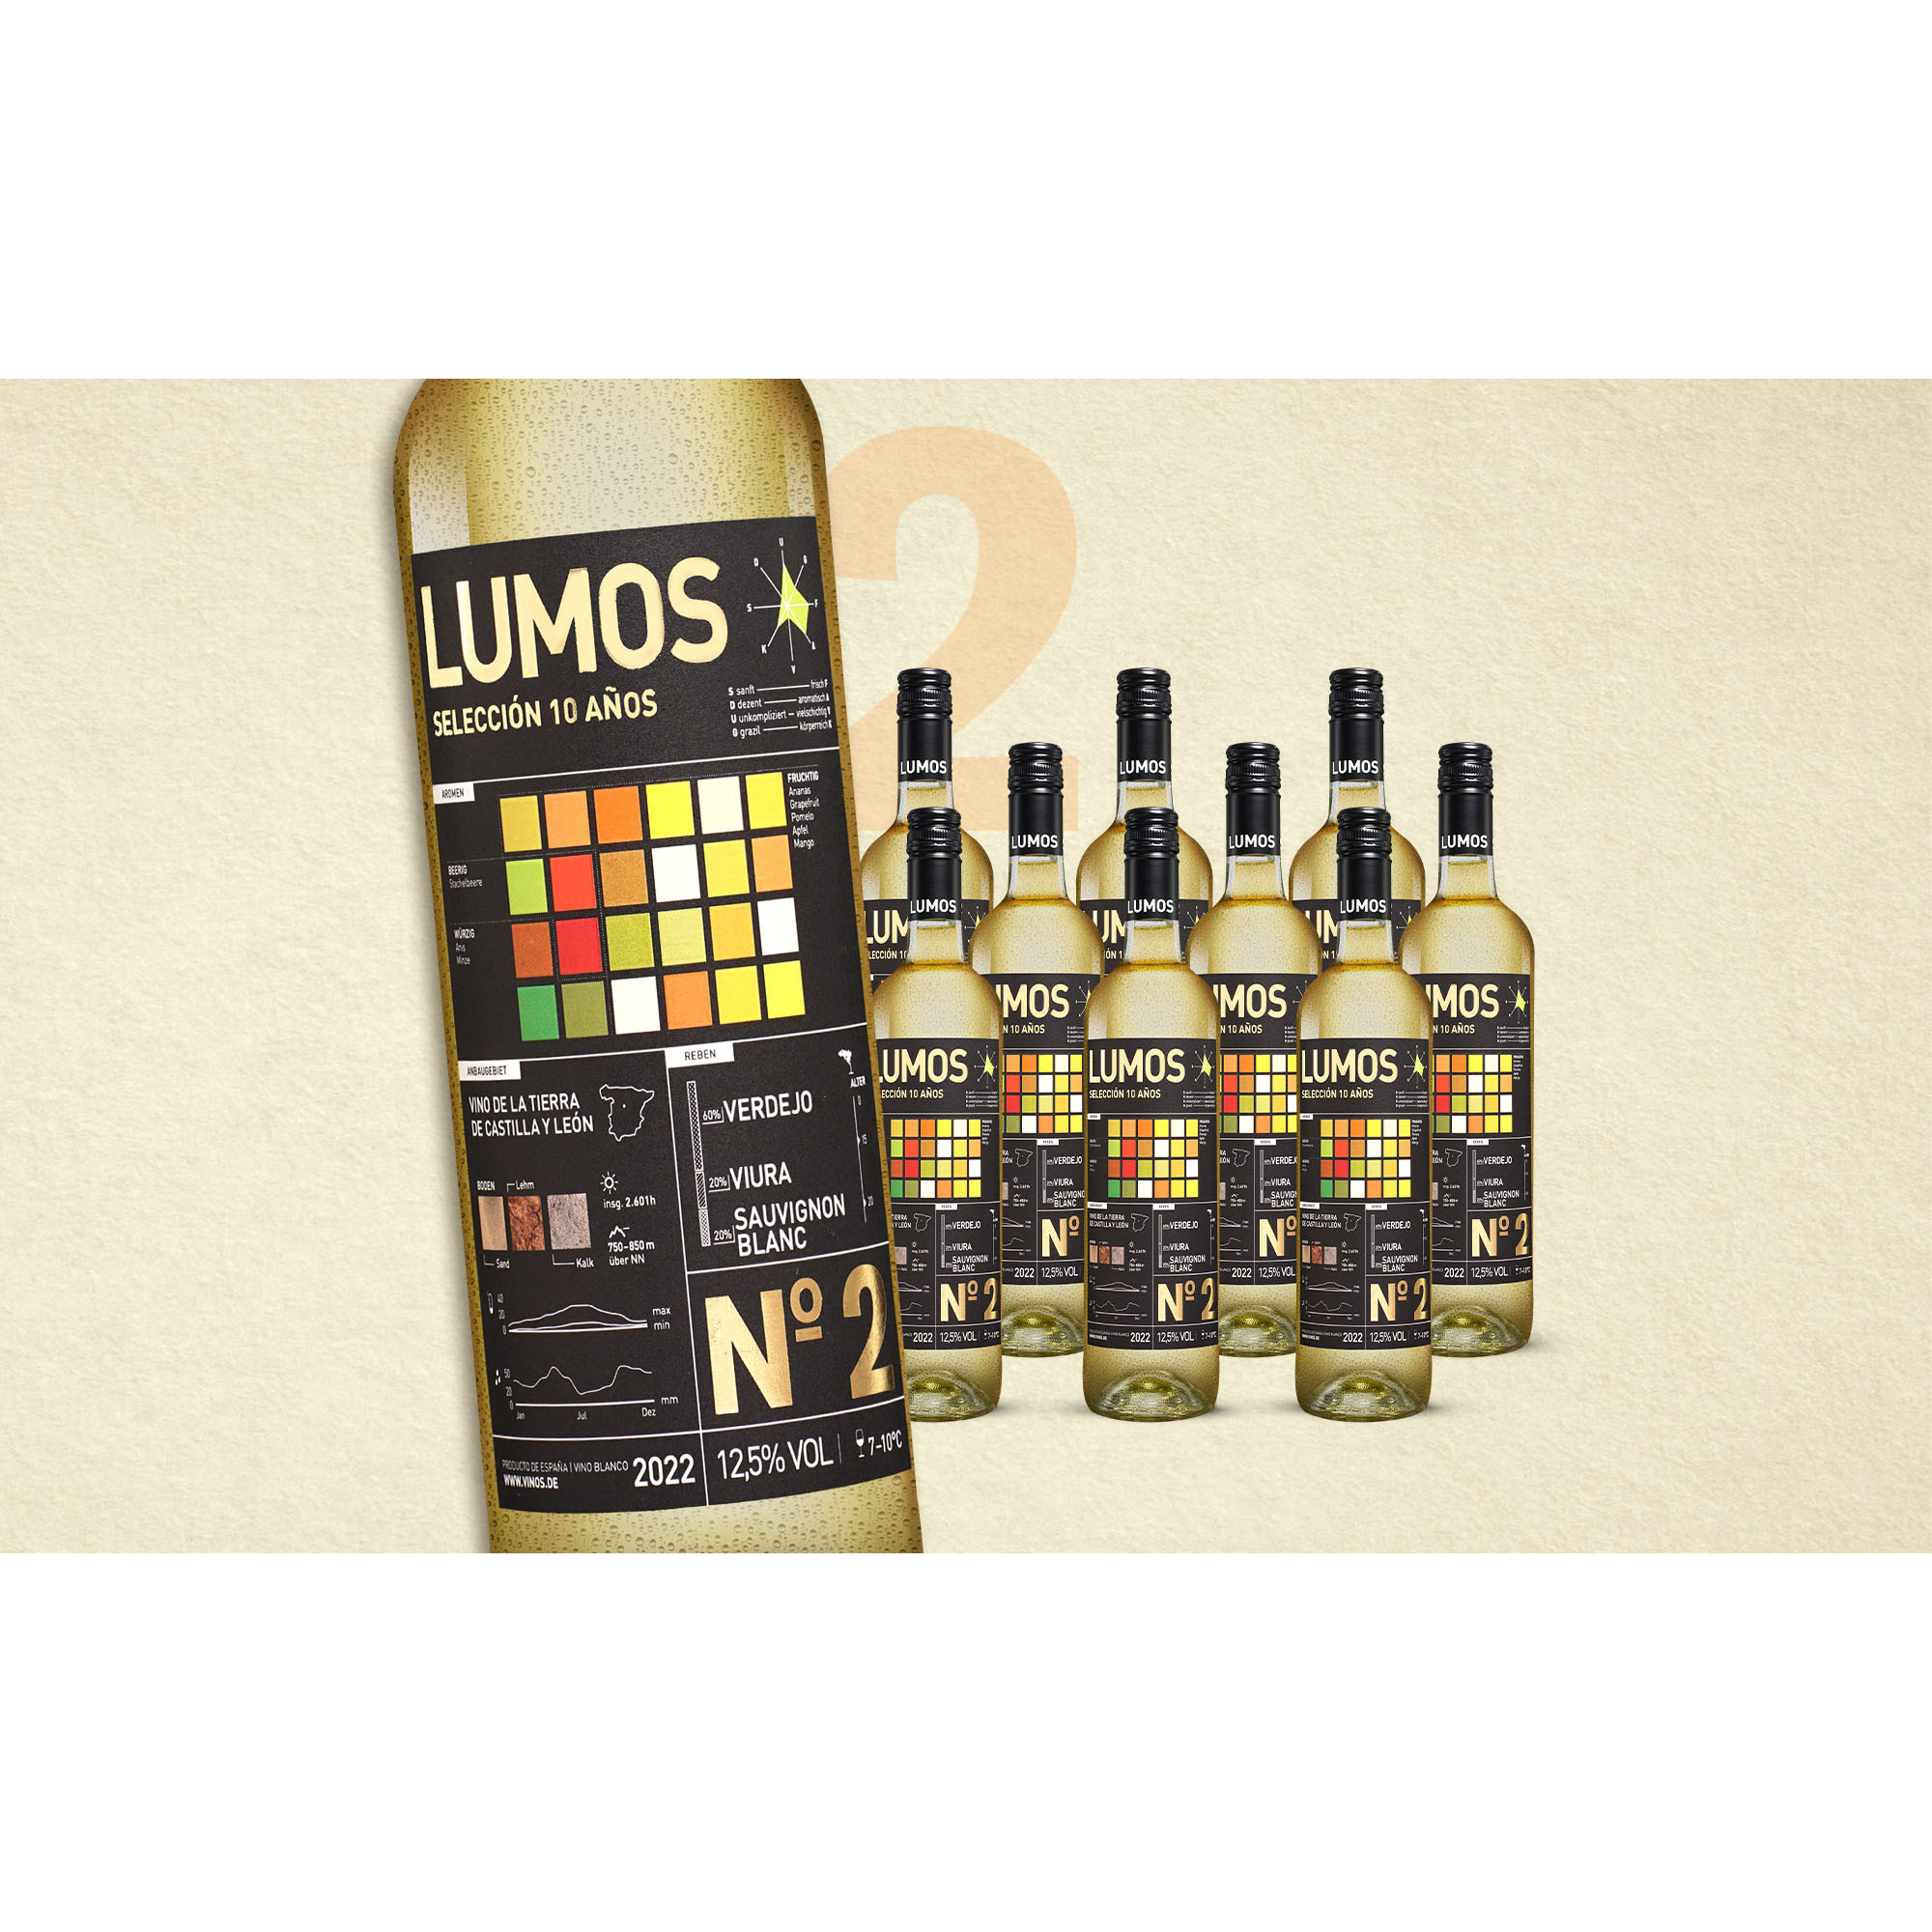 Lumos No.2 Blanco 2022  7.5L 12.5% Vol. Weinpaket aus Spanien 35964 vinos DE